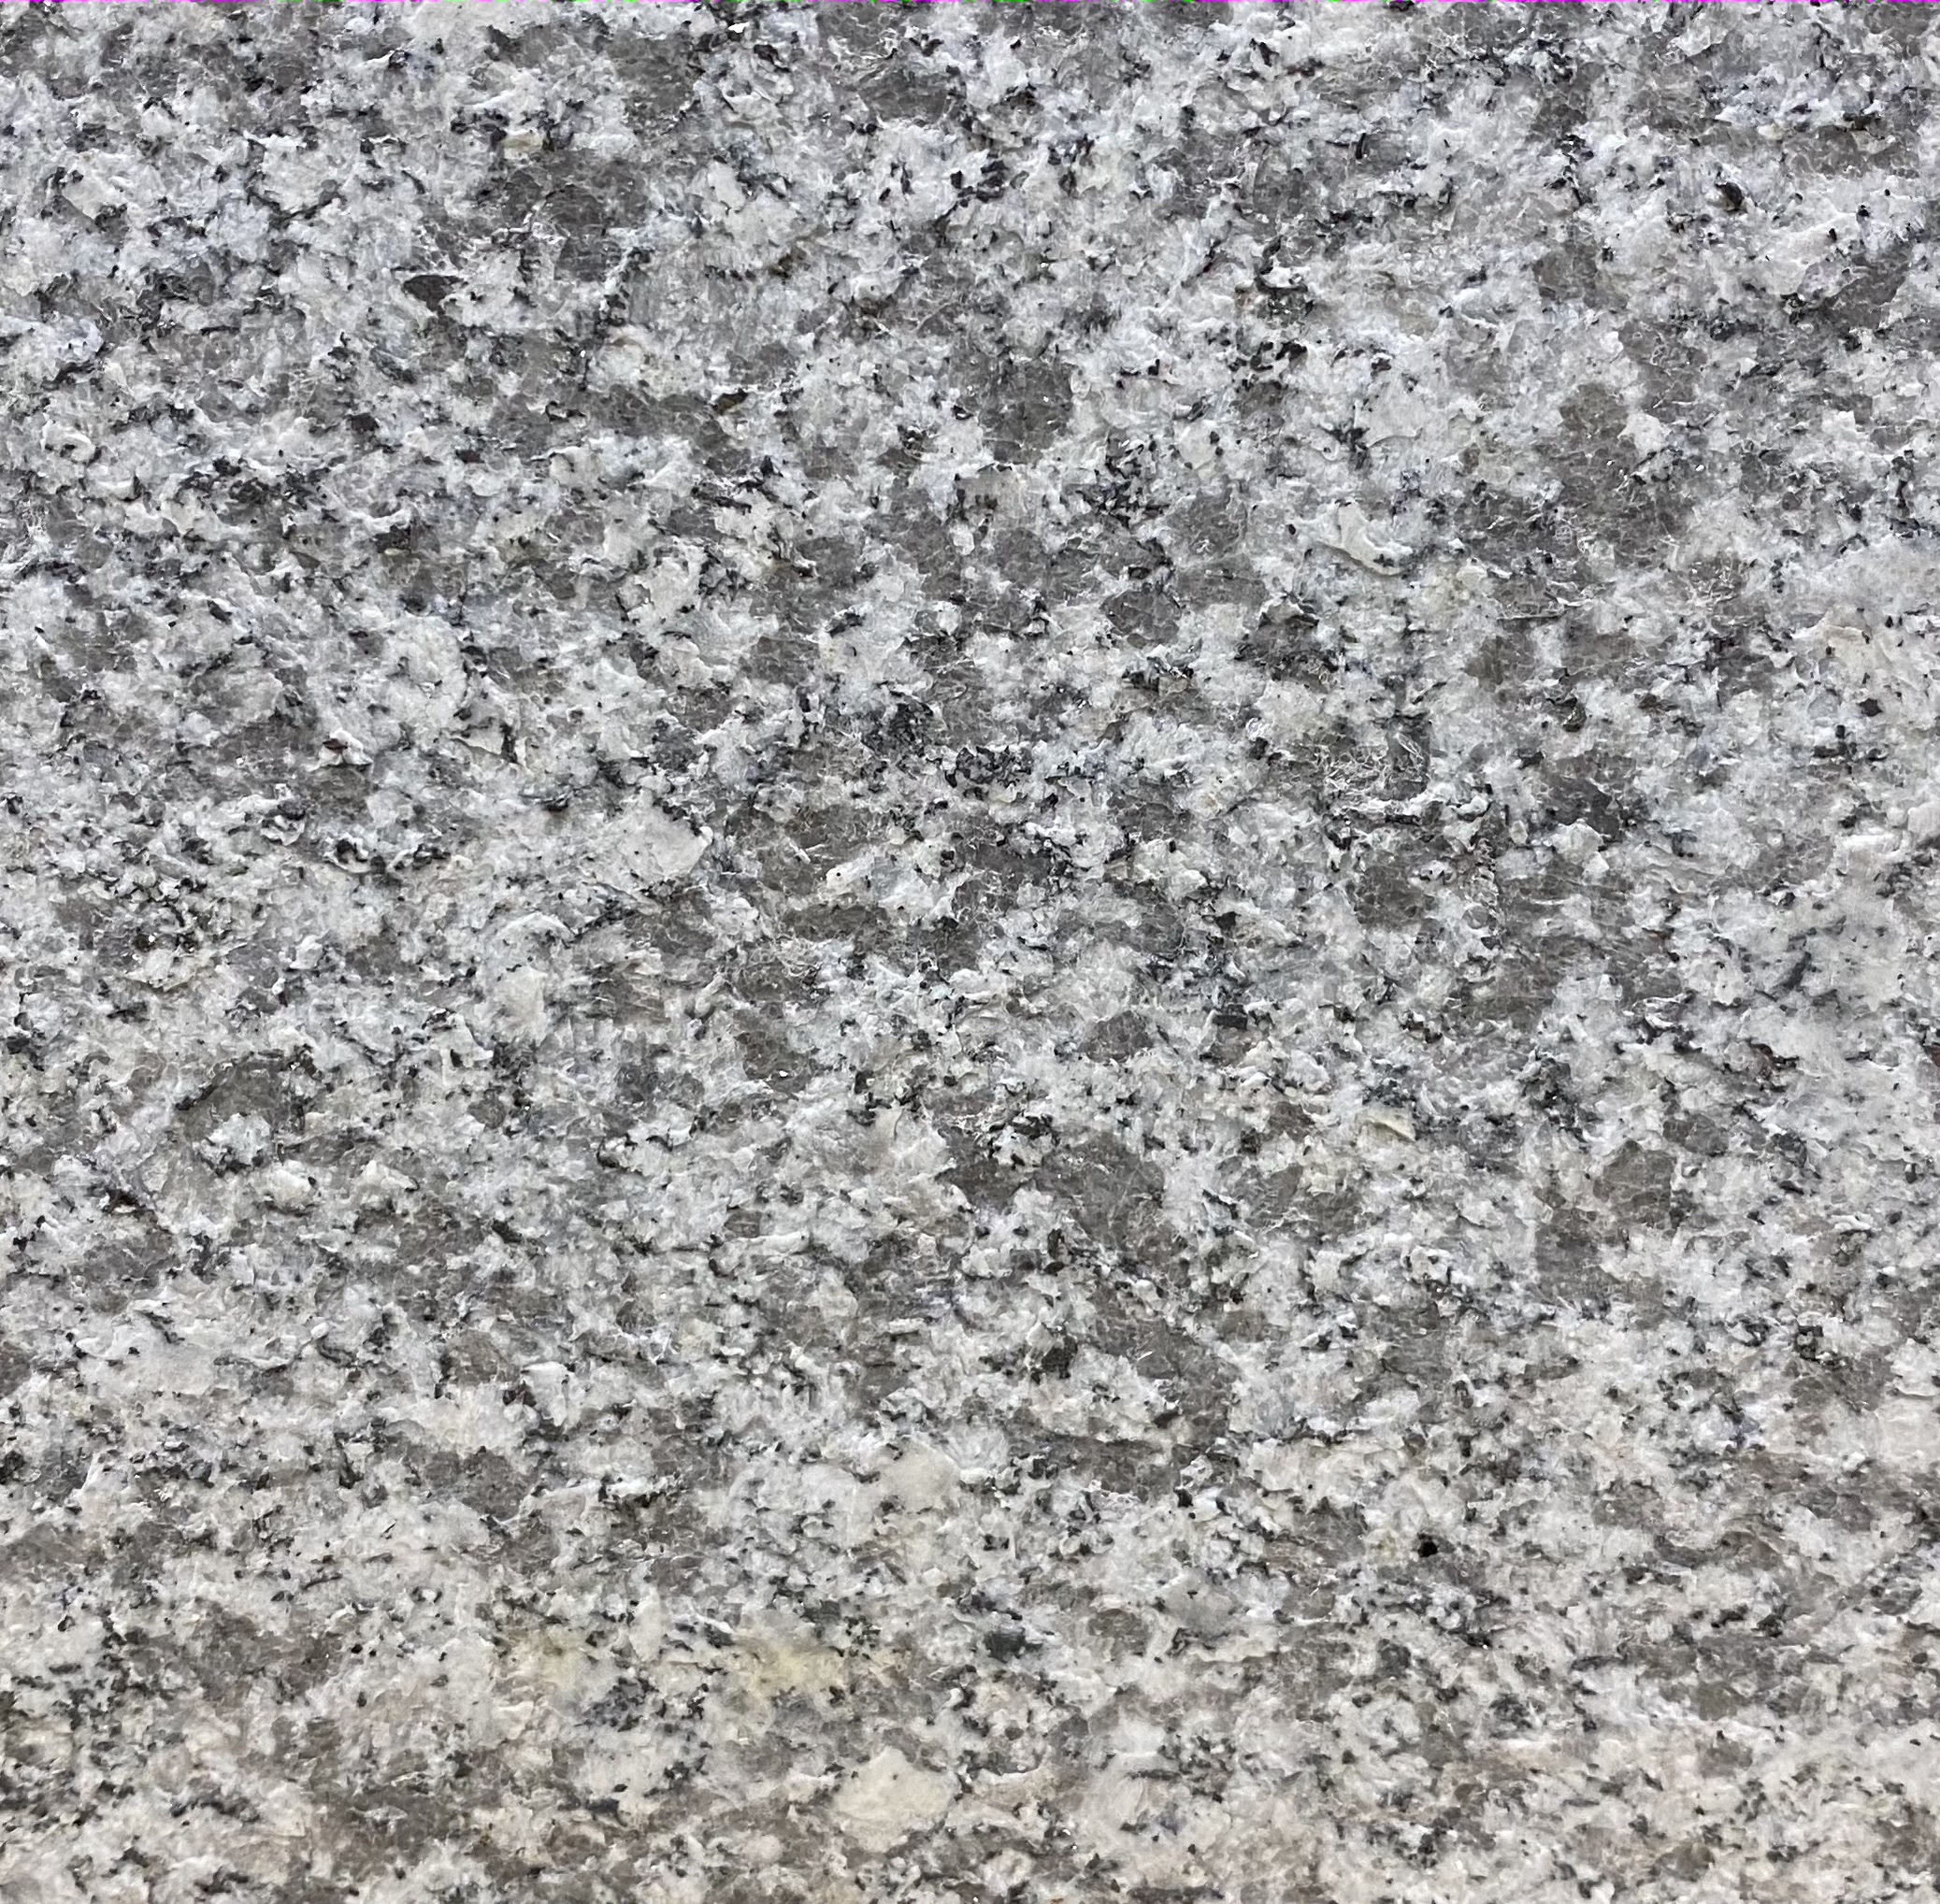 Salt and Pepper Granite sample